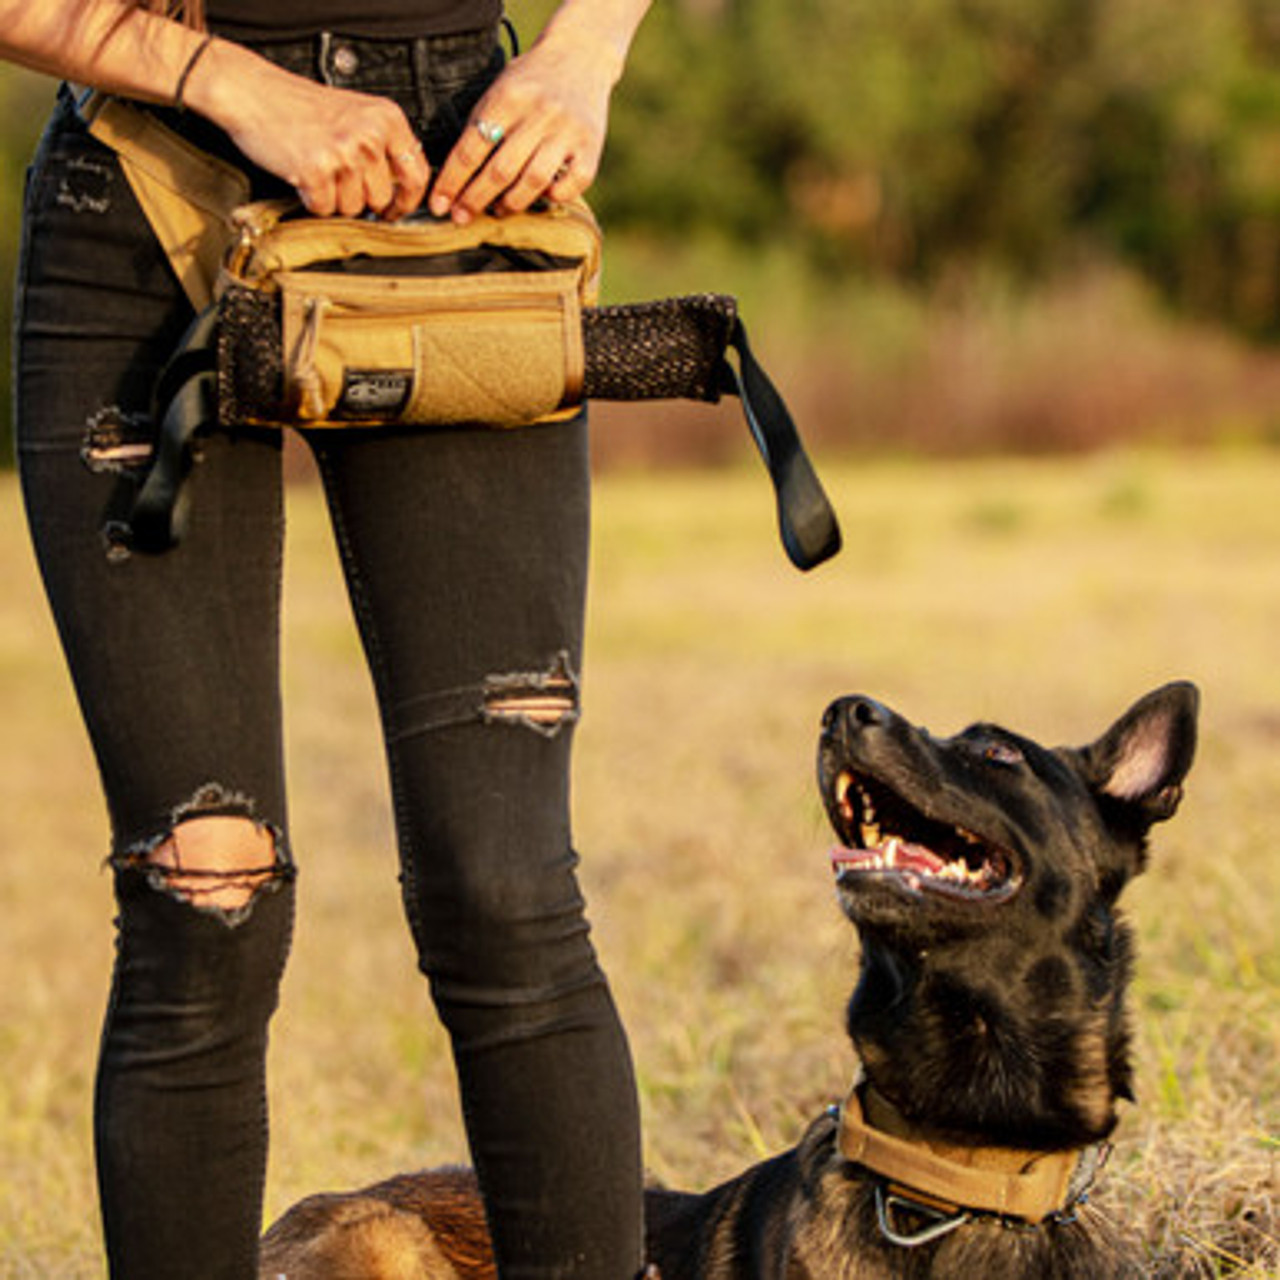 Dog Trainer Fanny Pack | Versatile Adventure Pack | Dog Handler Tool Belt